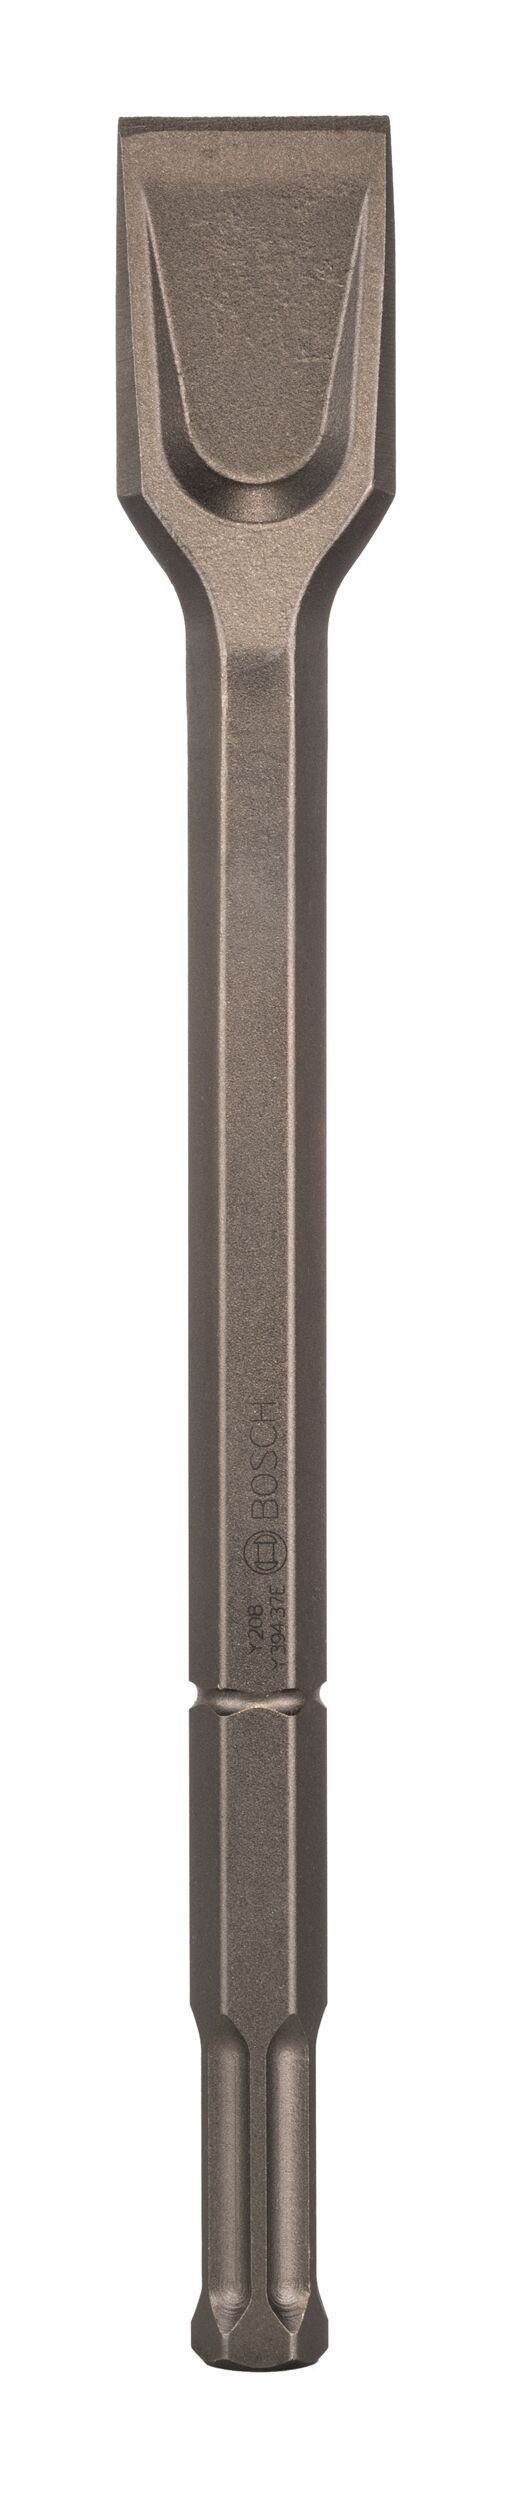 BOSCH Steinbohrer, Spatmeißel mit 22-mm-Sechskantaufnahme 50 mm - 400 x